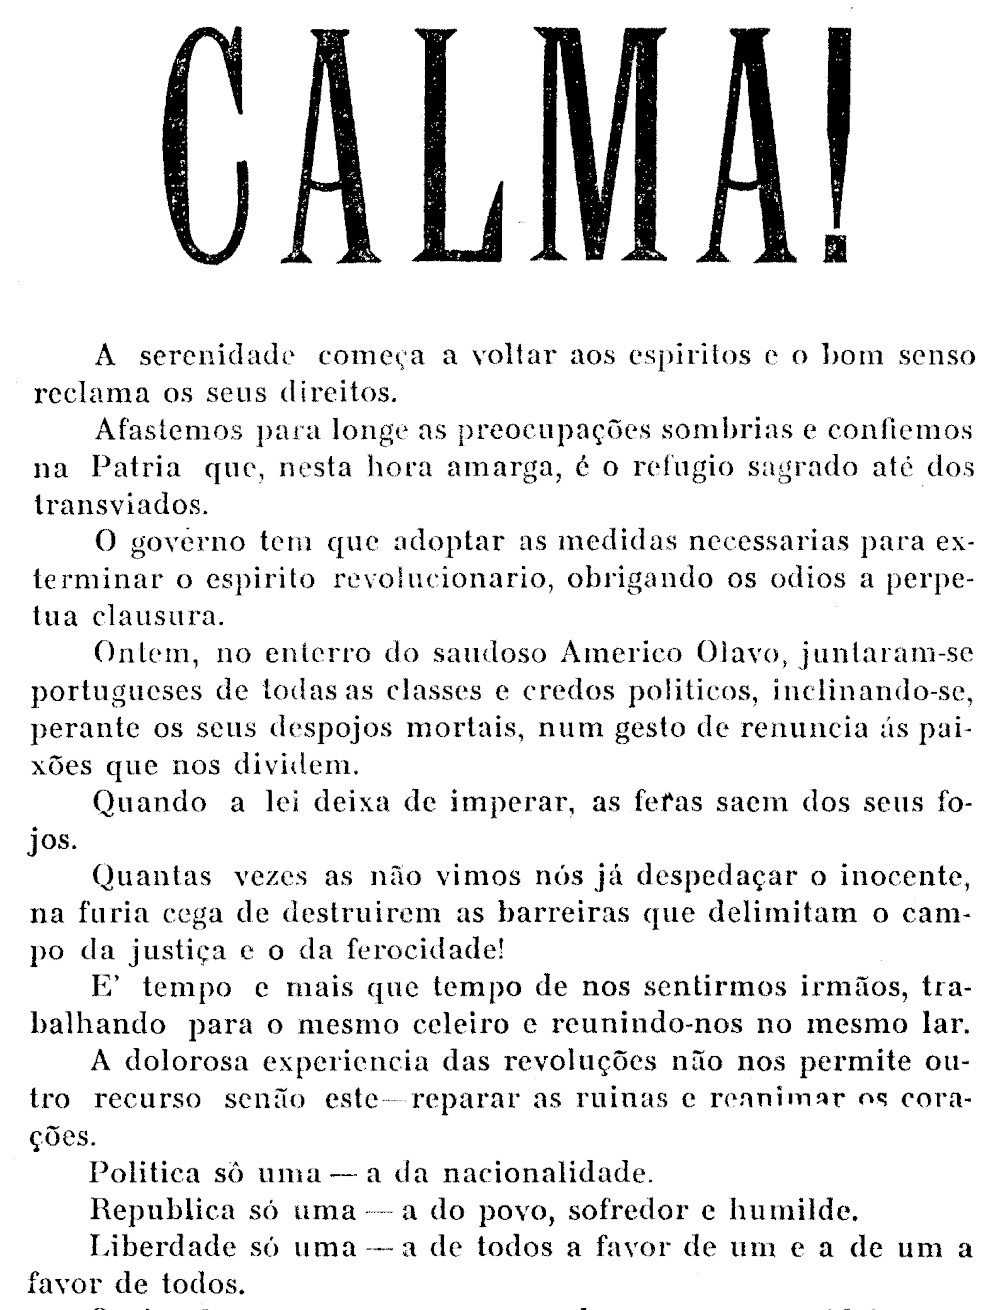 Calma!, O país deseja ordem, 14 de fevereiro de 1927